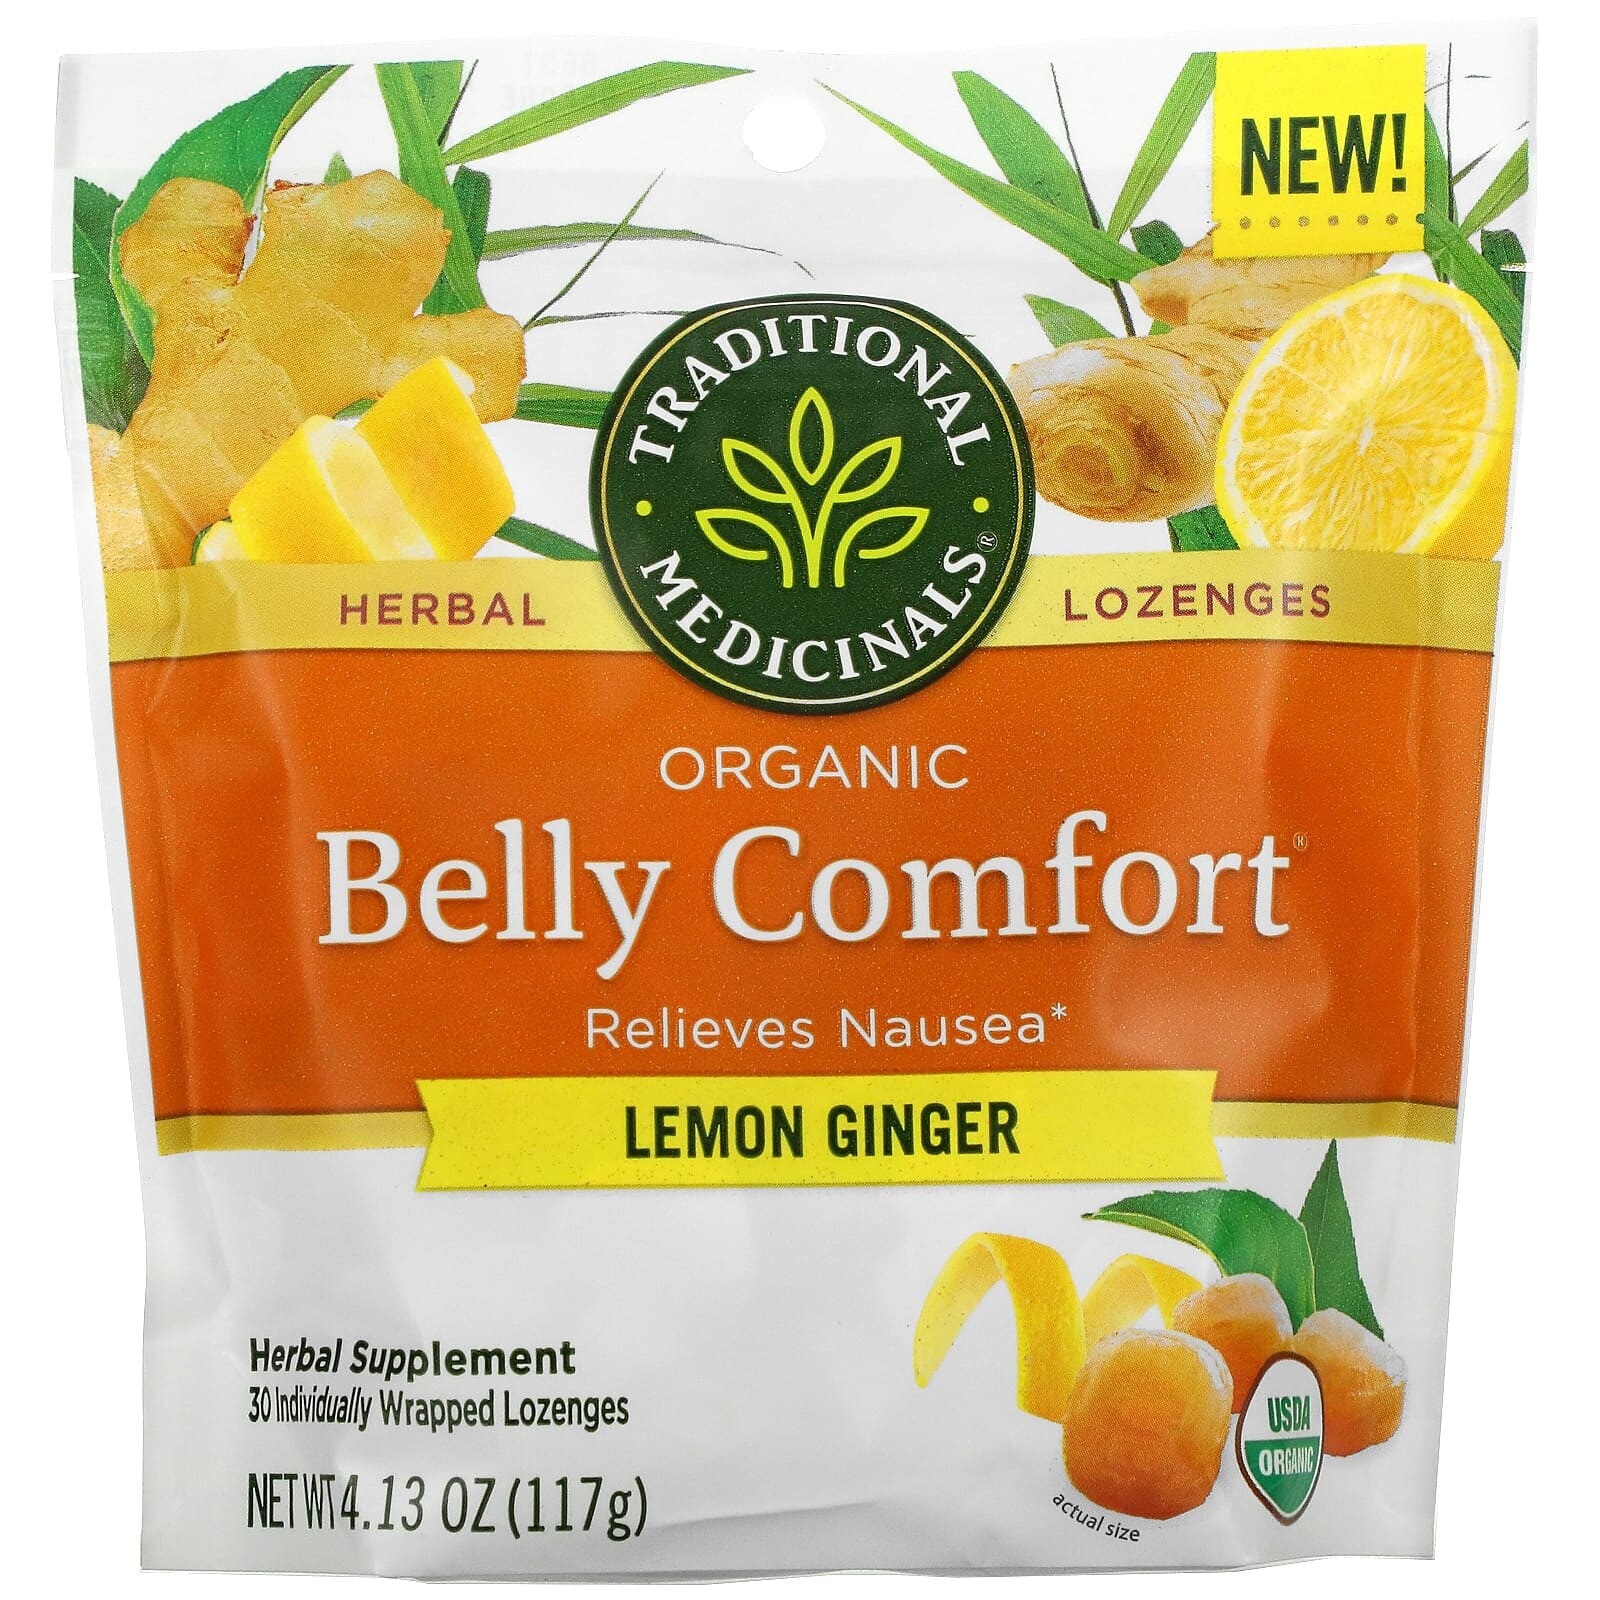 Традитионал Медисиналс, Organic Belly Comfort, лимон и имбирь, 30 леденцов в индивидуальной упаковке